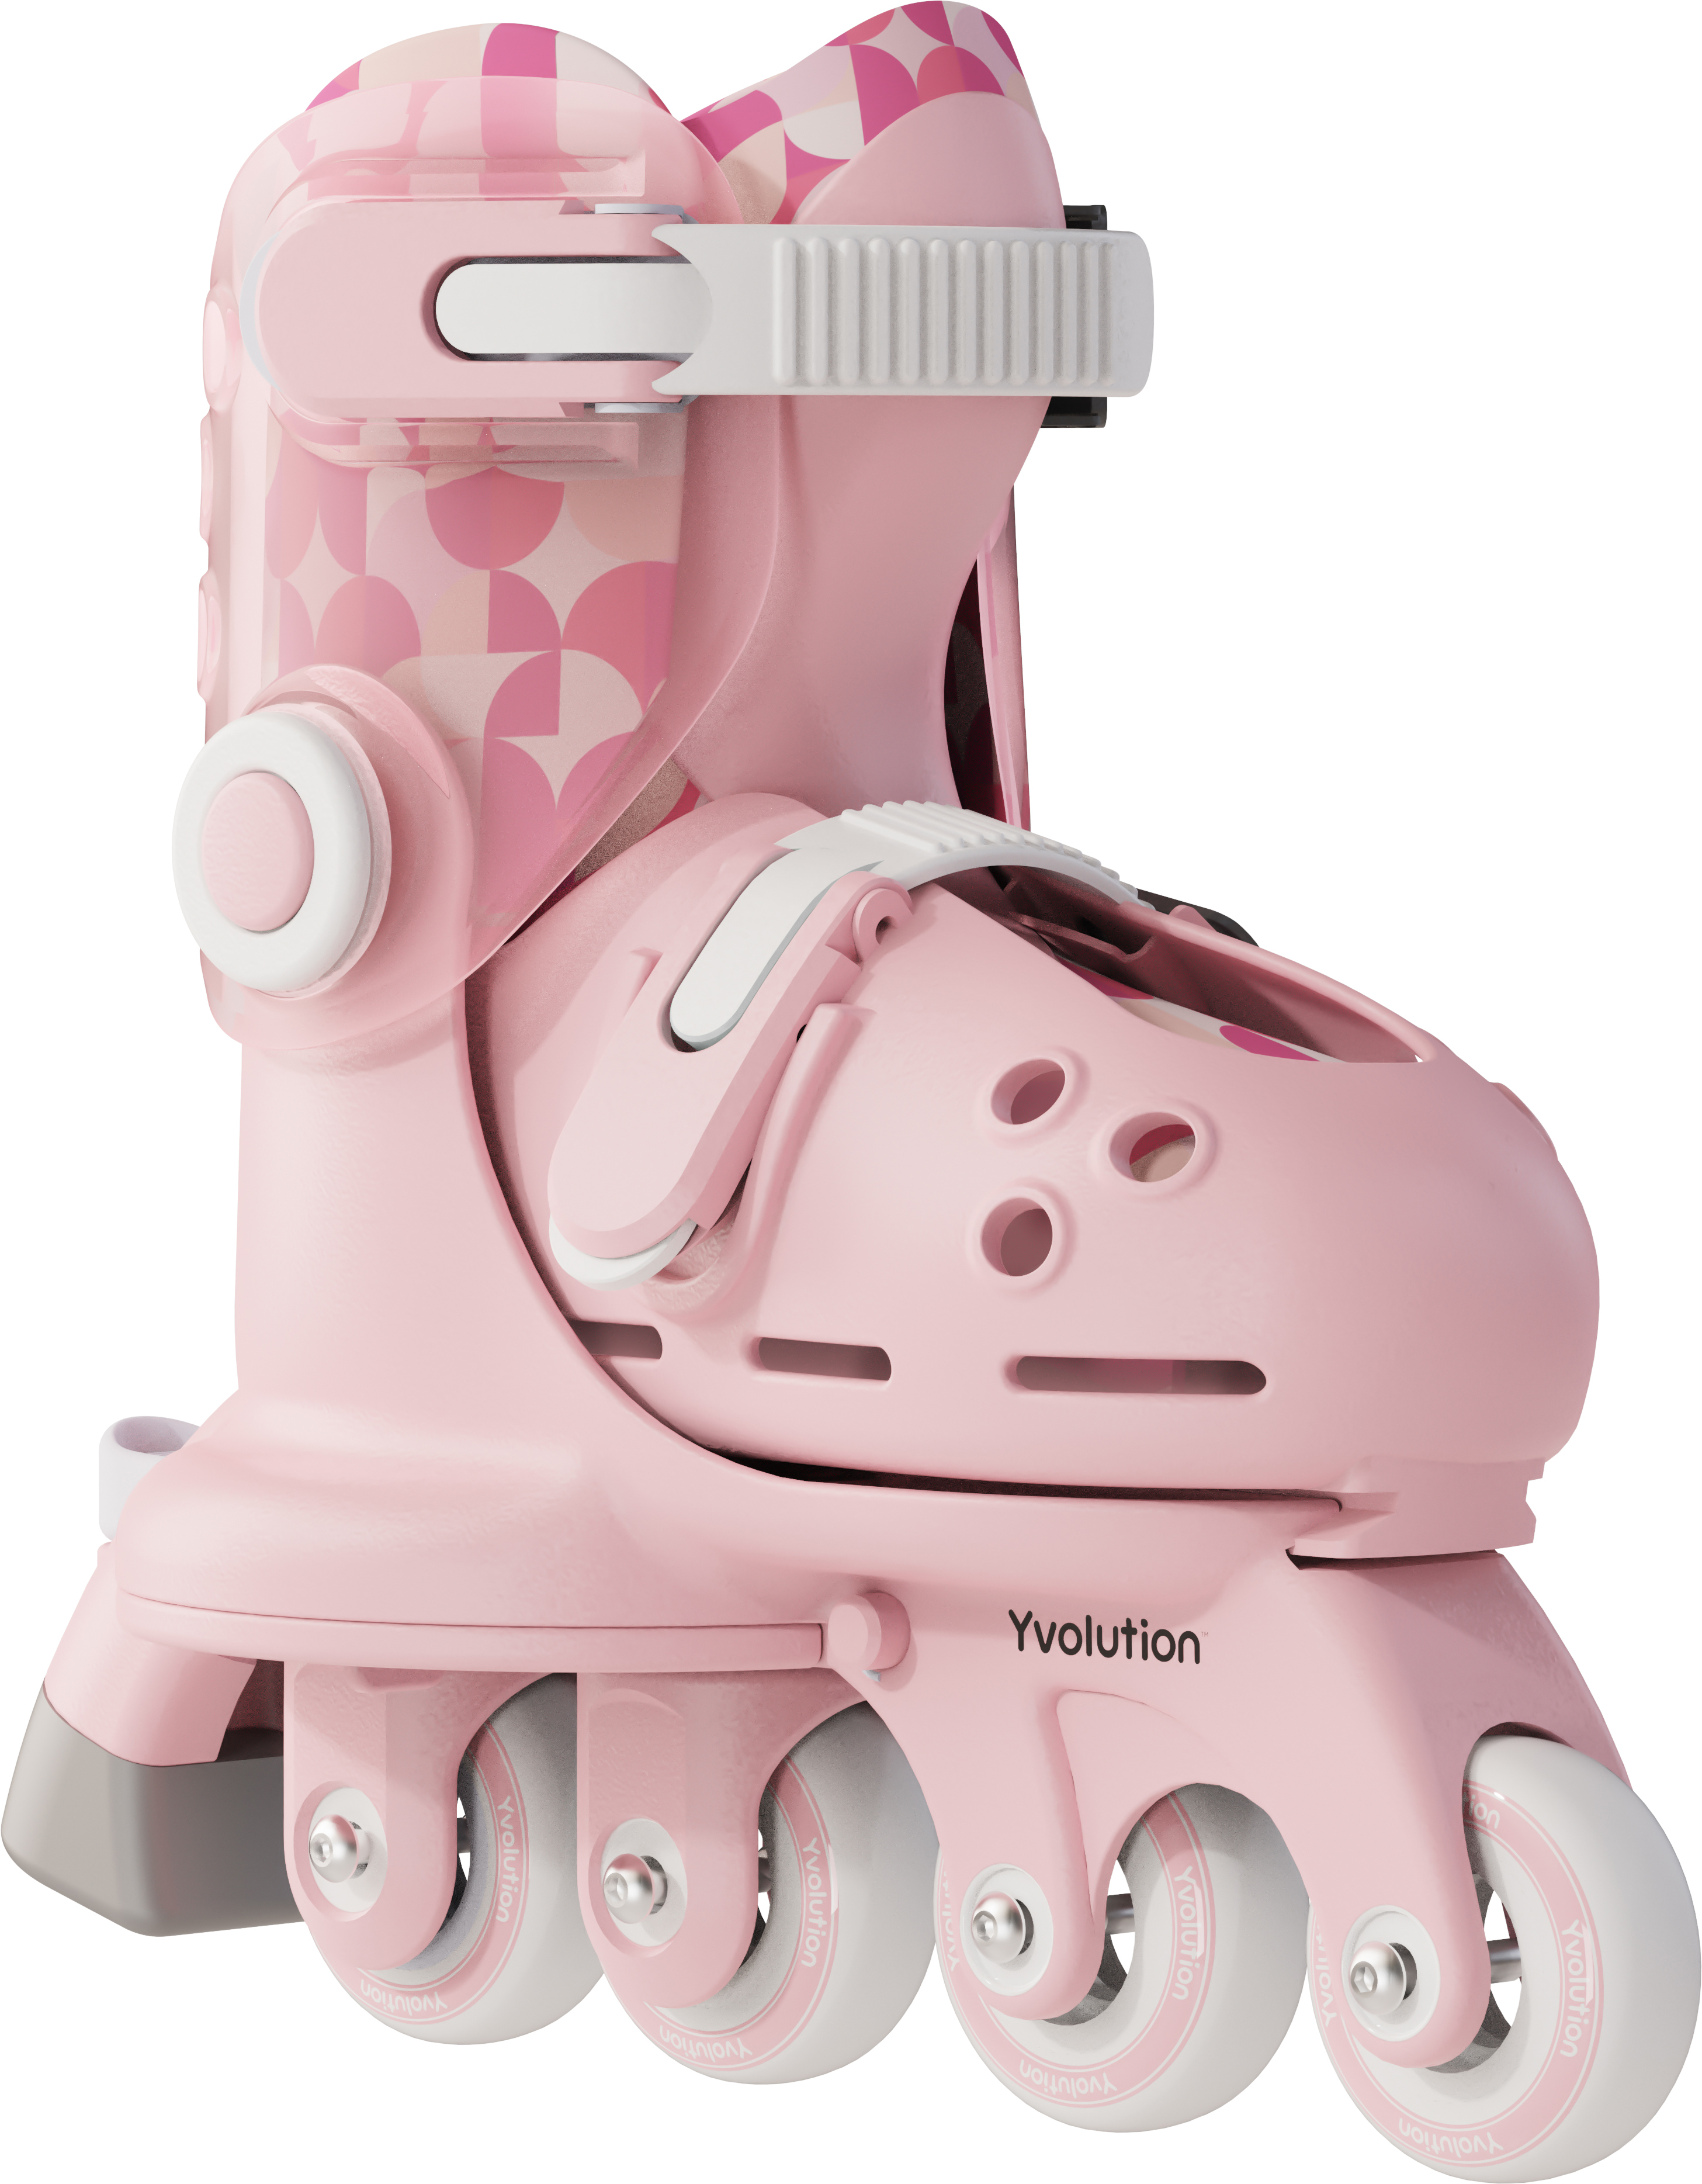 Роликовые коньки Yvolution Twista, размер 30-34, розовый фото 4